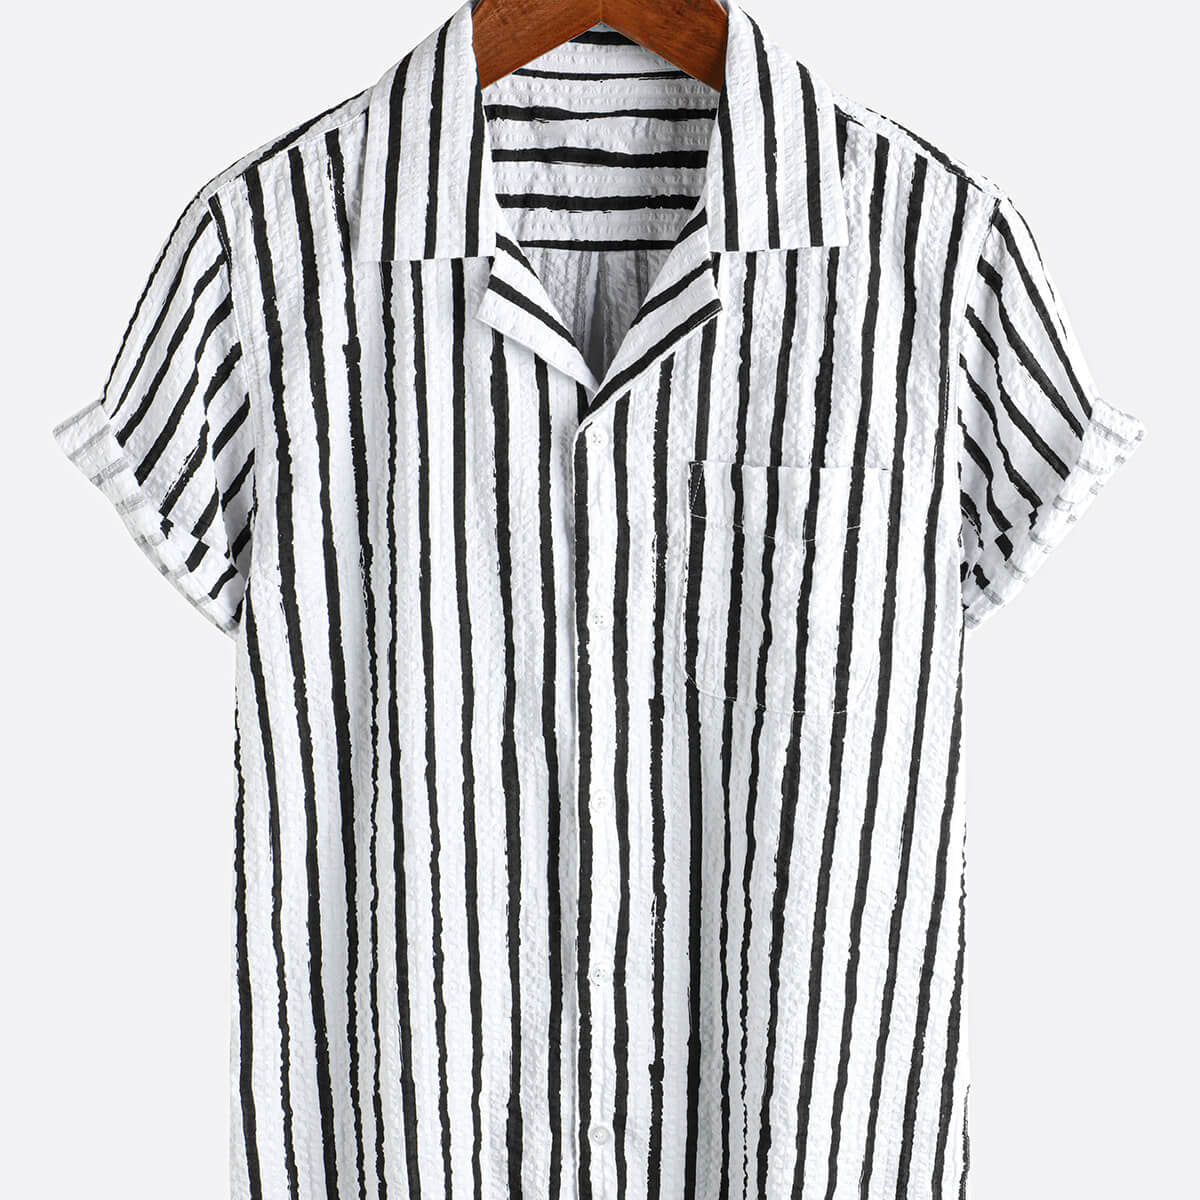 Camisa hawaiana de manga corta con botones y bolsillo a rayas, informal, 100% algodón, para hombre